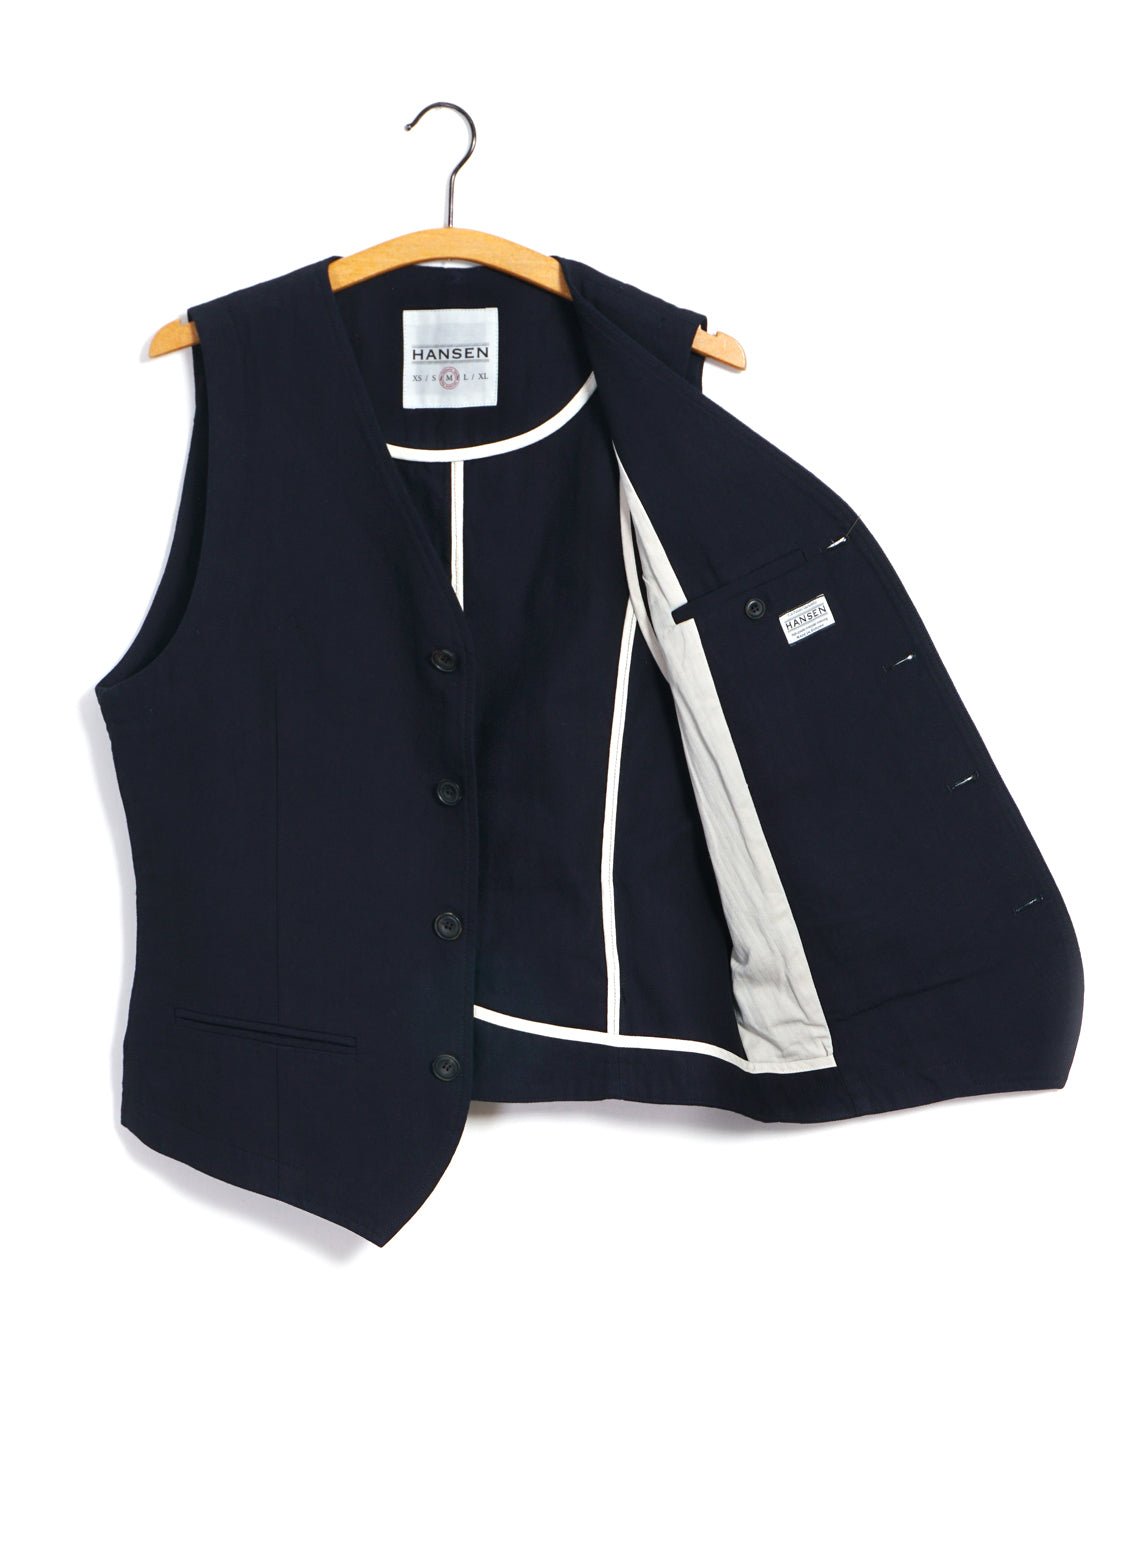 HANSEN GARMENTS - DANIEL | Classic Waistcoat | Indigo Herringbone - HANSEN Garments